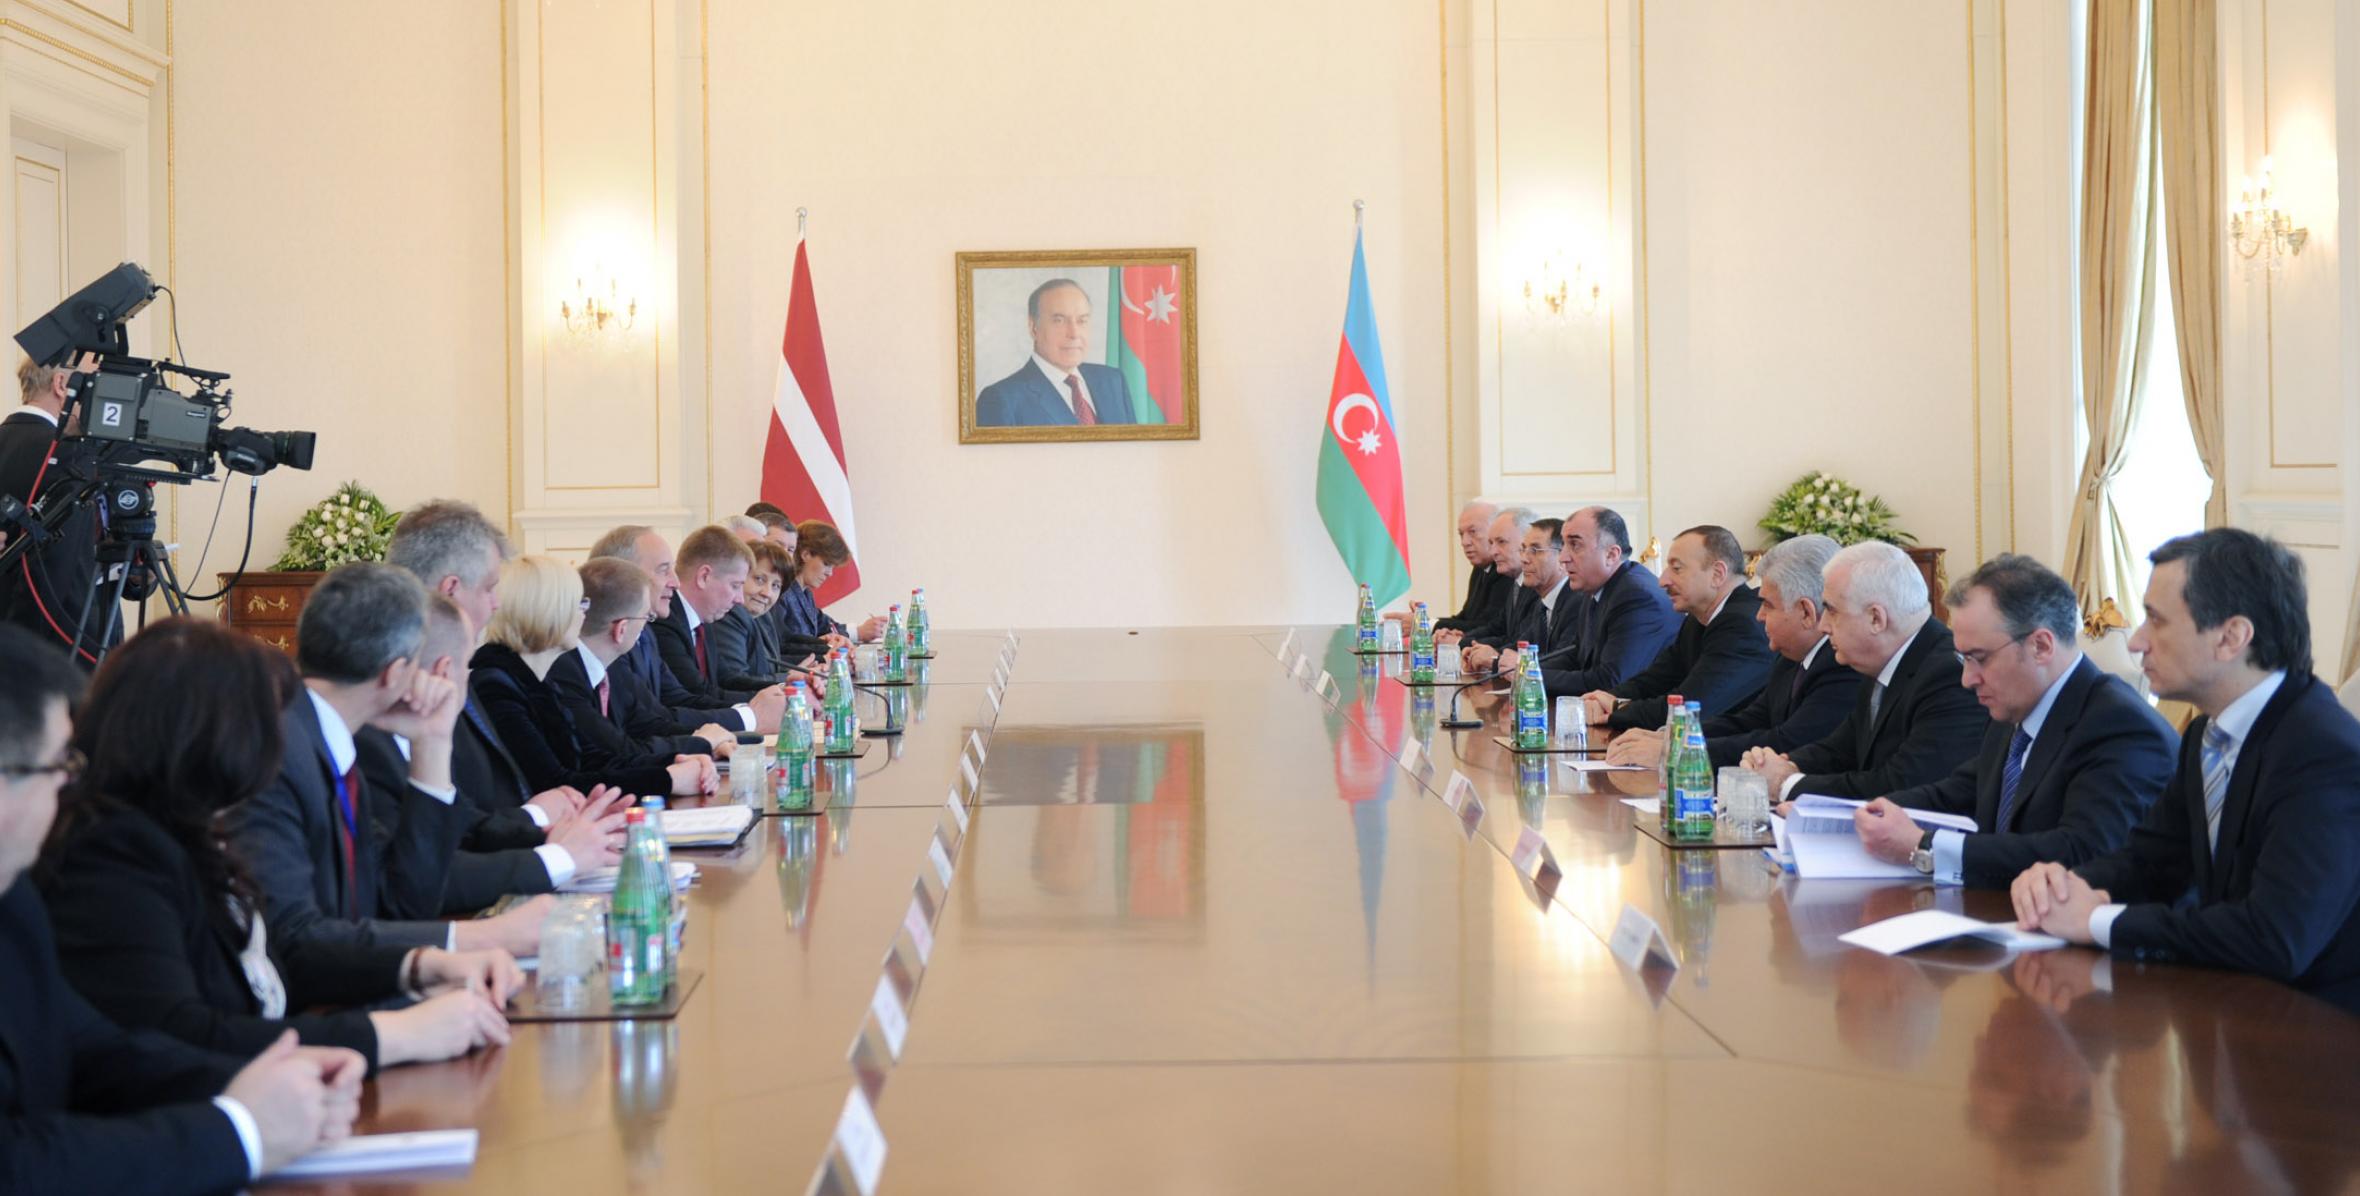 Состоялась встреча Ильхама Алиева и Президента Латвийской Республики Андриса Берзиньша в расширенном составе с участием делегаций